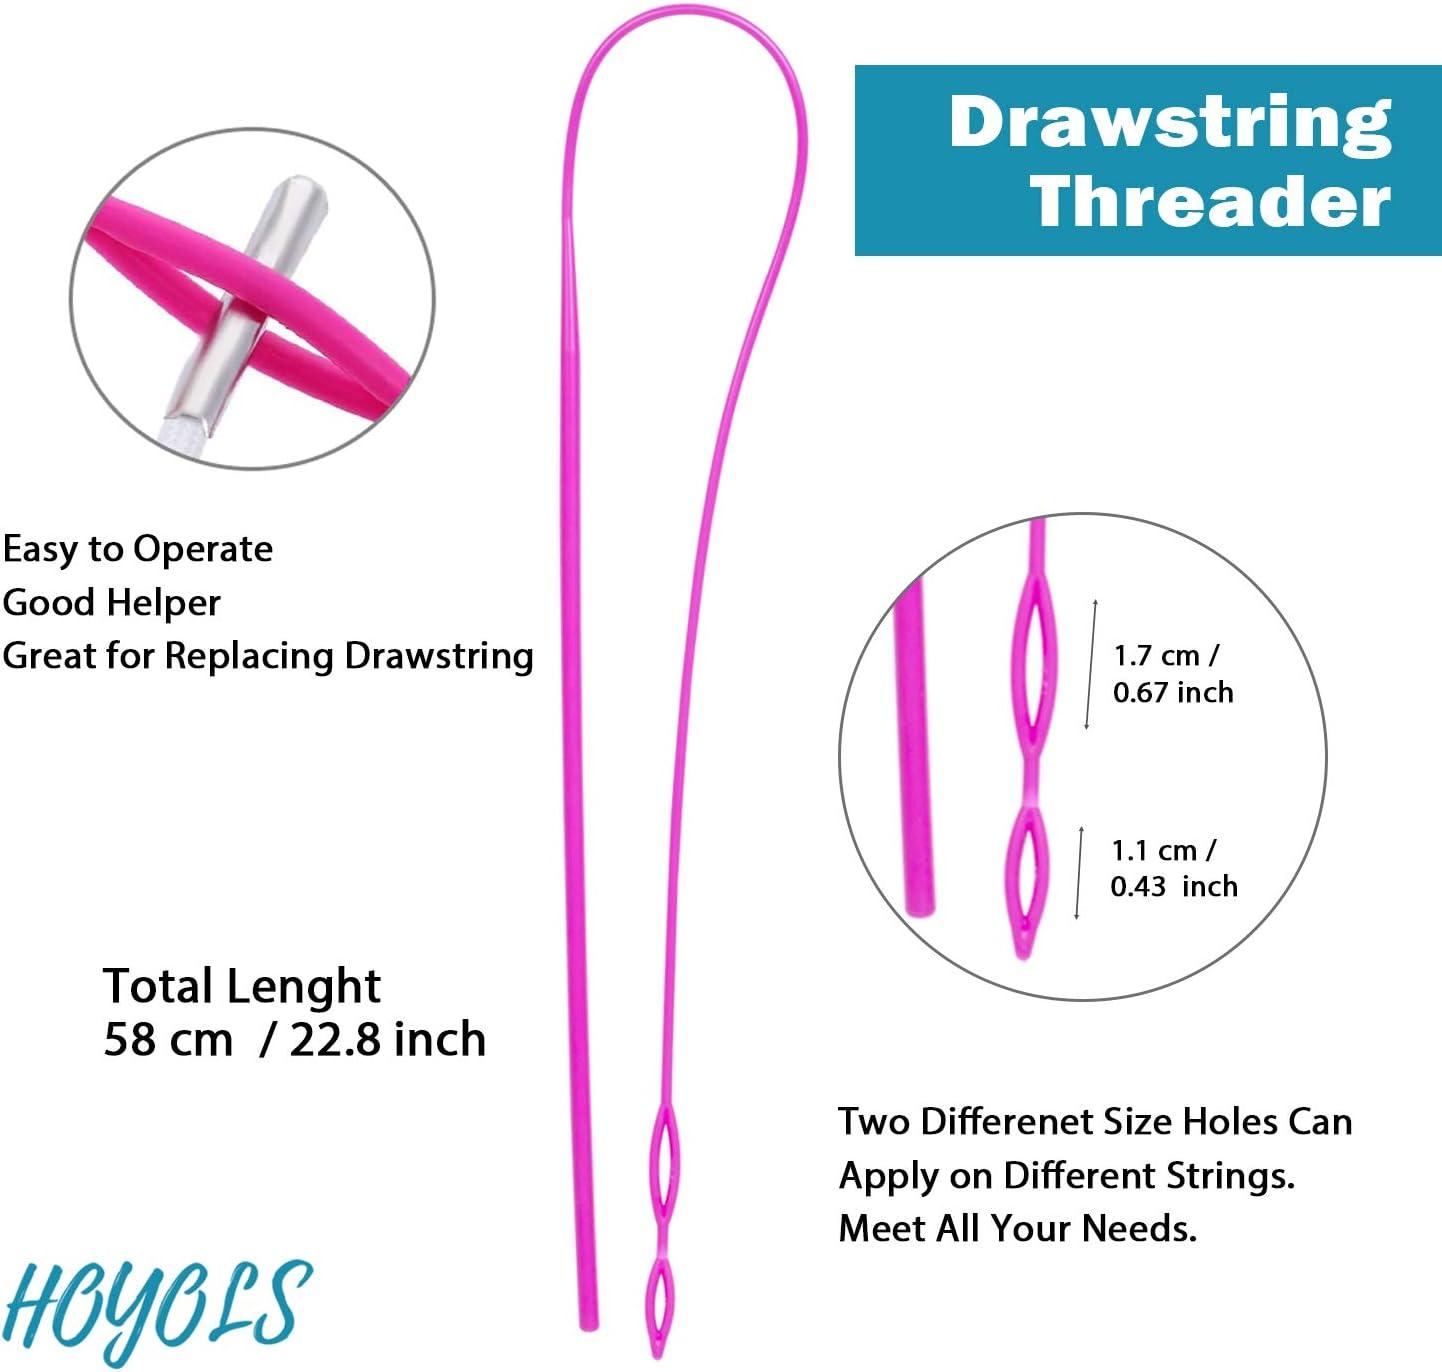 Drawstring Threader